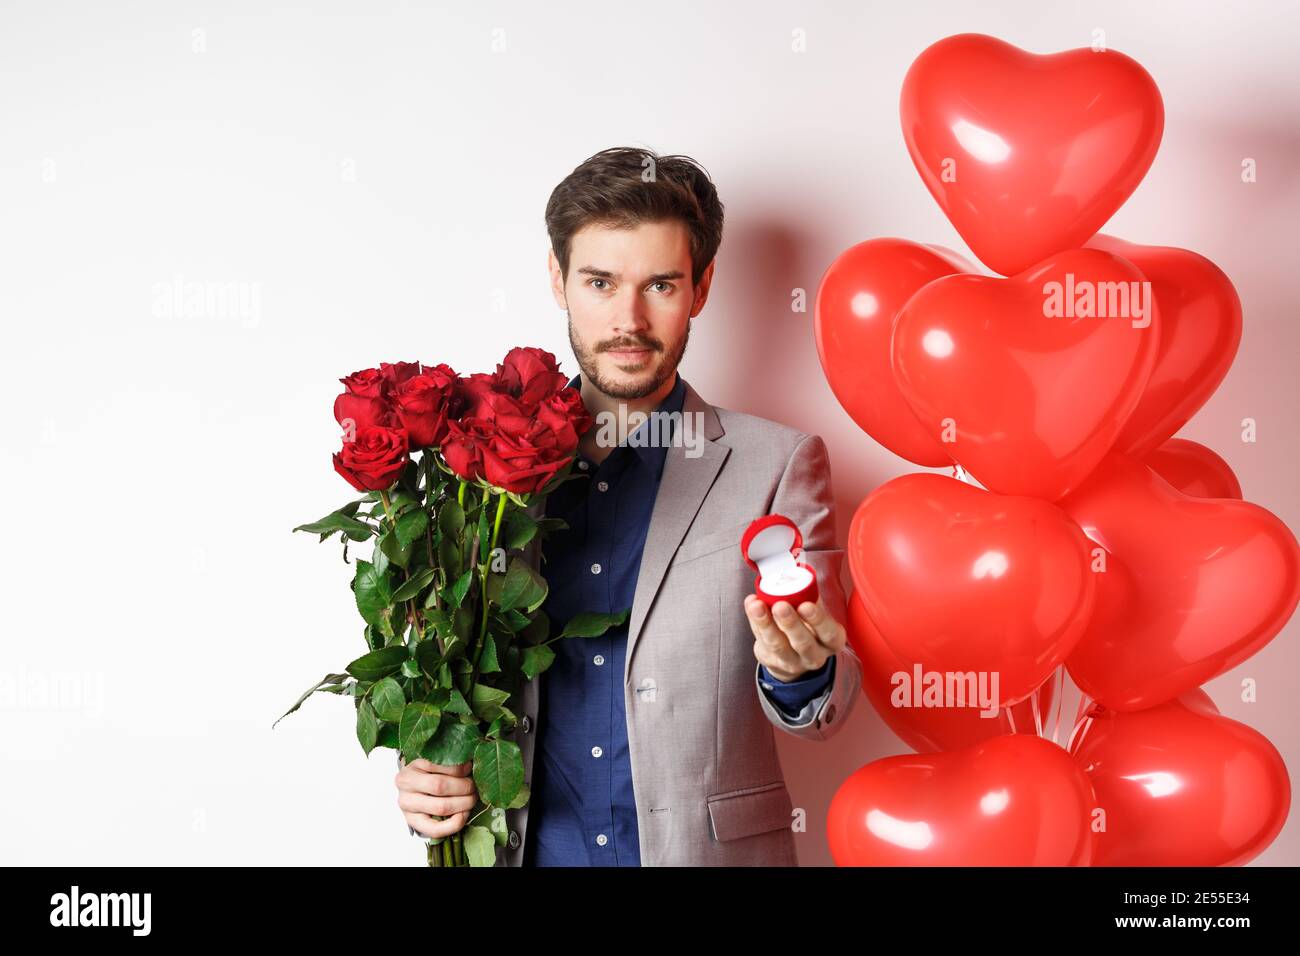 Romance de san valentín. hombre joven con ramo de rosas rojas y globos de  corazón sonriendo, trae regalos para el amante en la fecha de san valentín,  de pie sobre fondo azul.